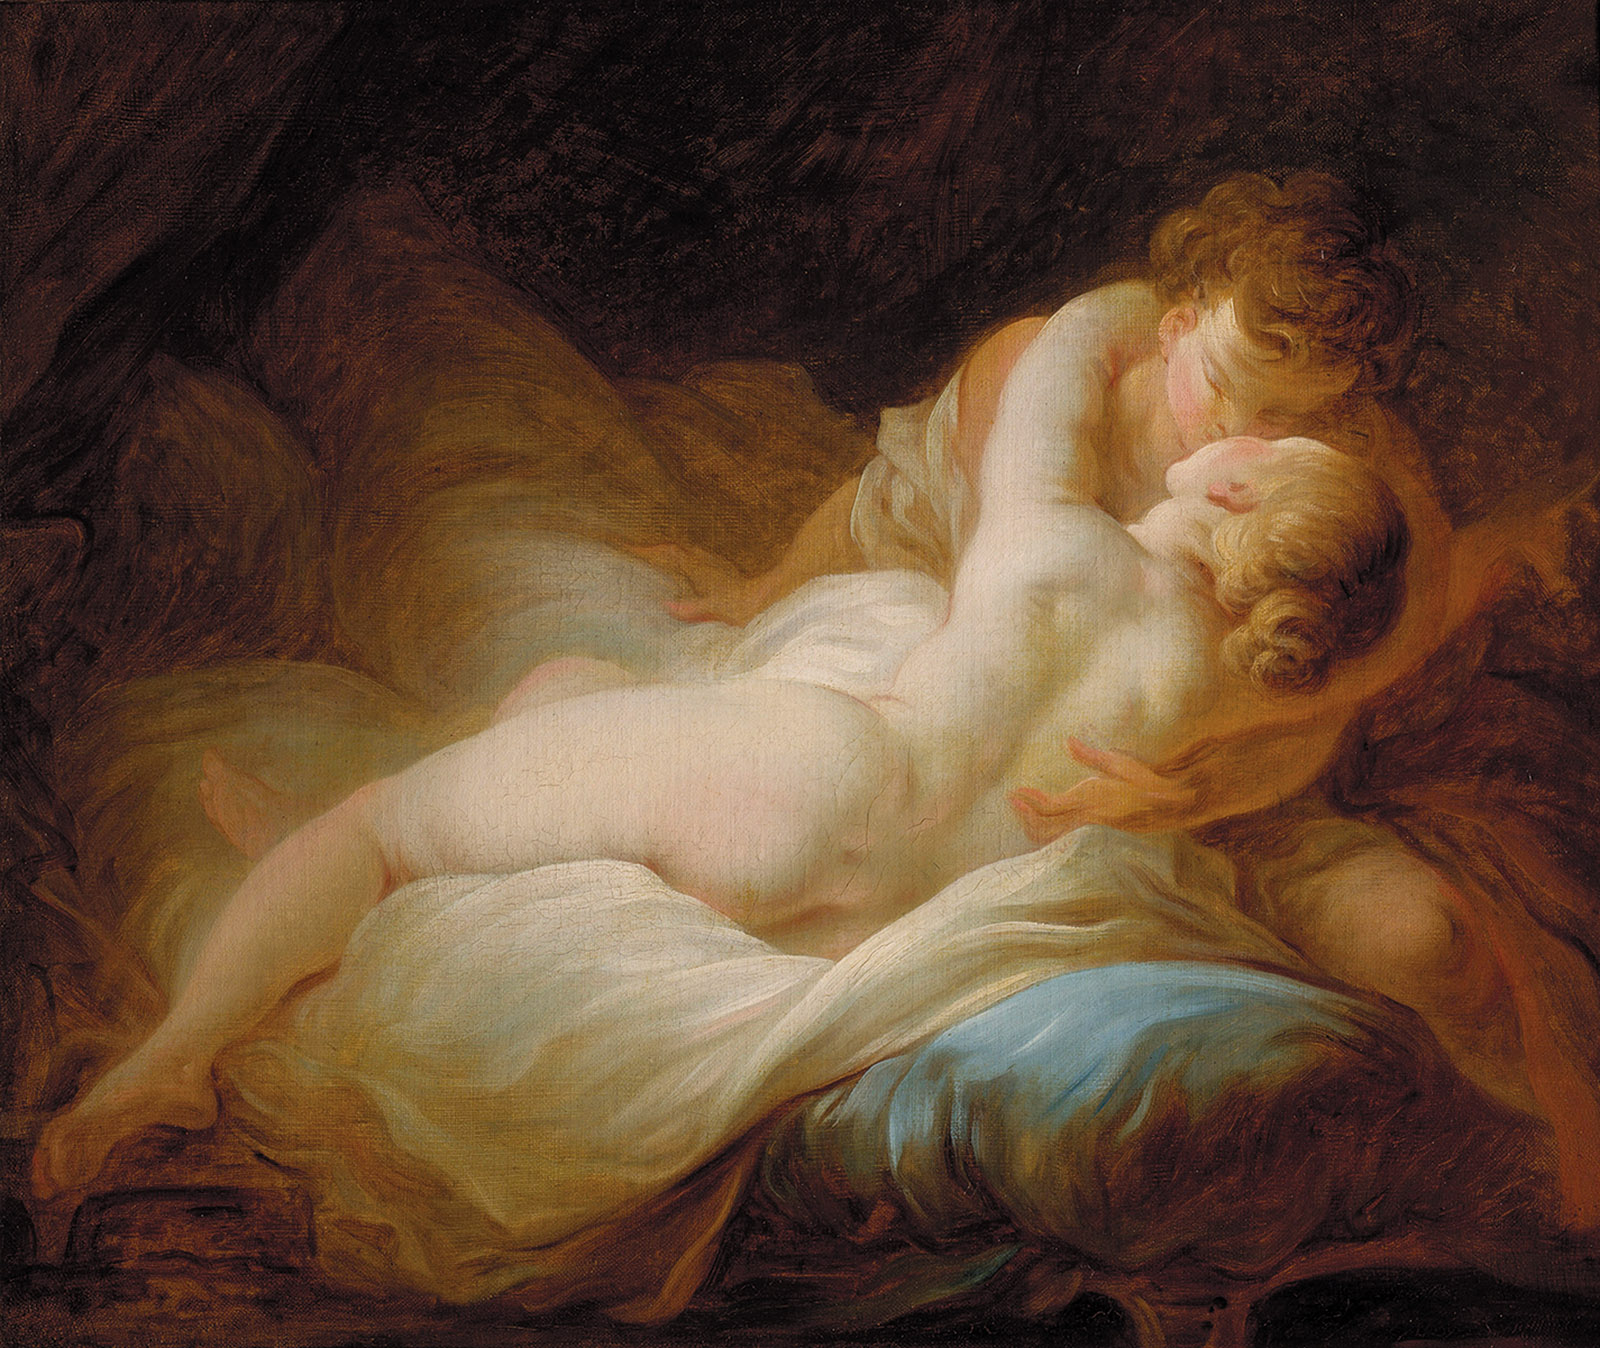 Jean-Honoré Fragonard: The Desired Moment, circa 1770